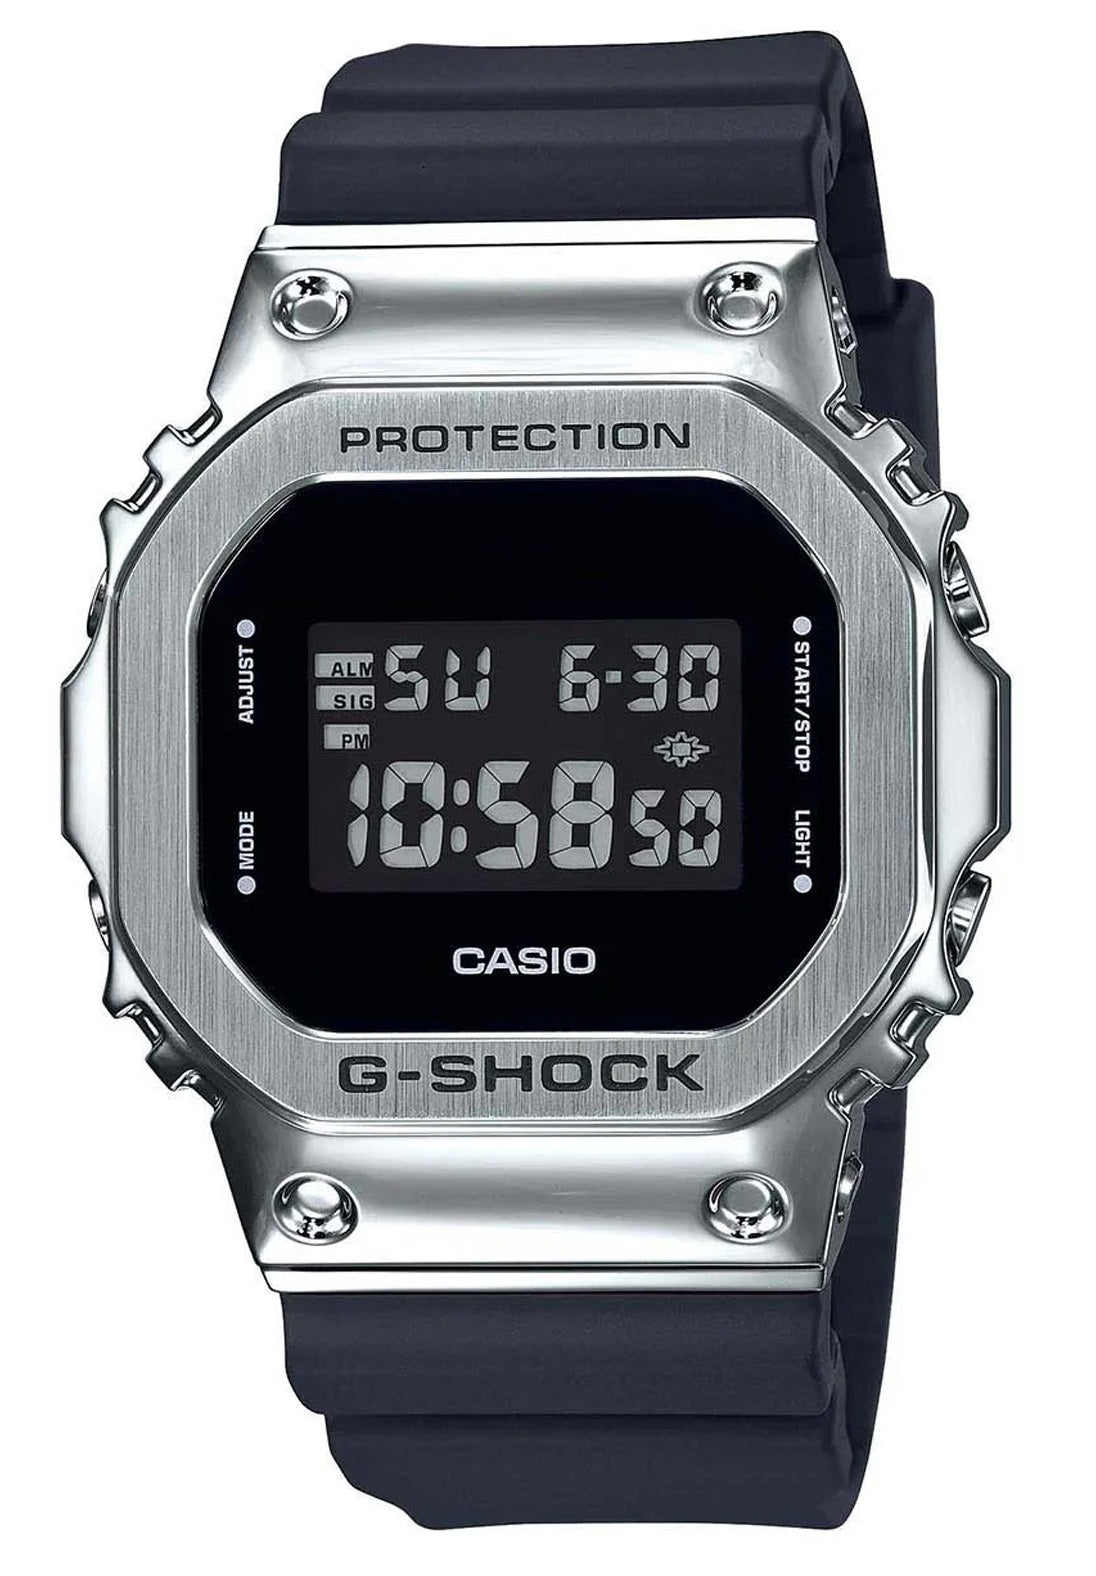 Casio G-shock GM-S5600-1DR Digital Rubber Strap Watch-Watch Portal Philippines